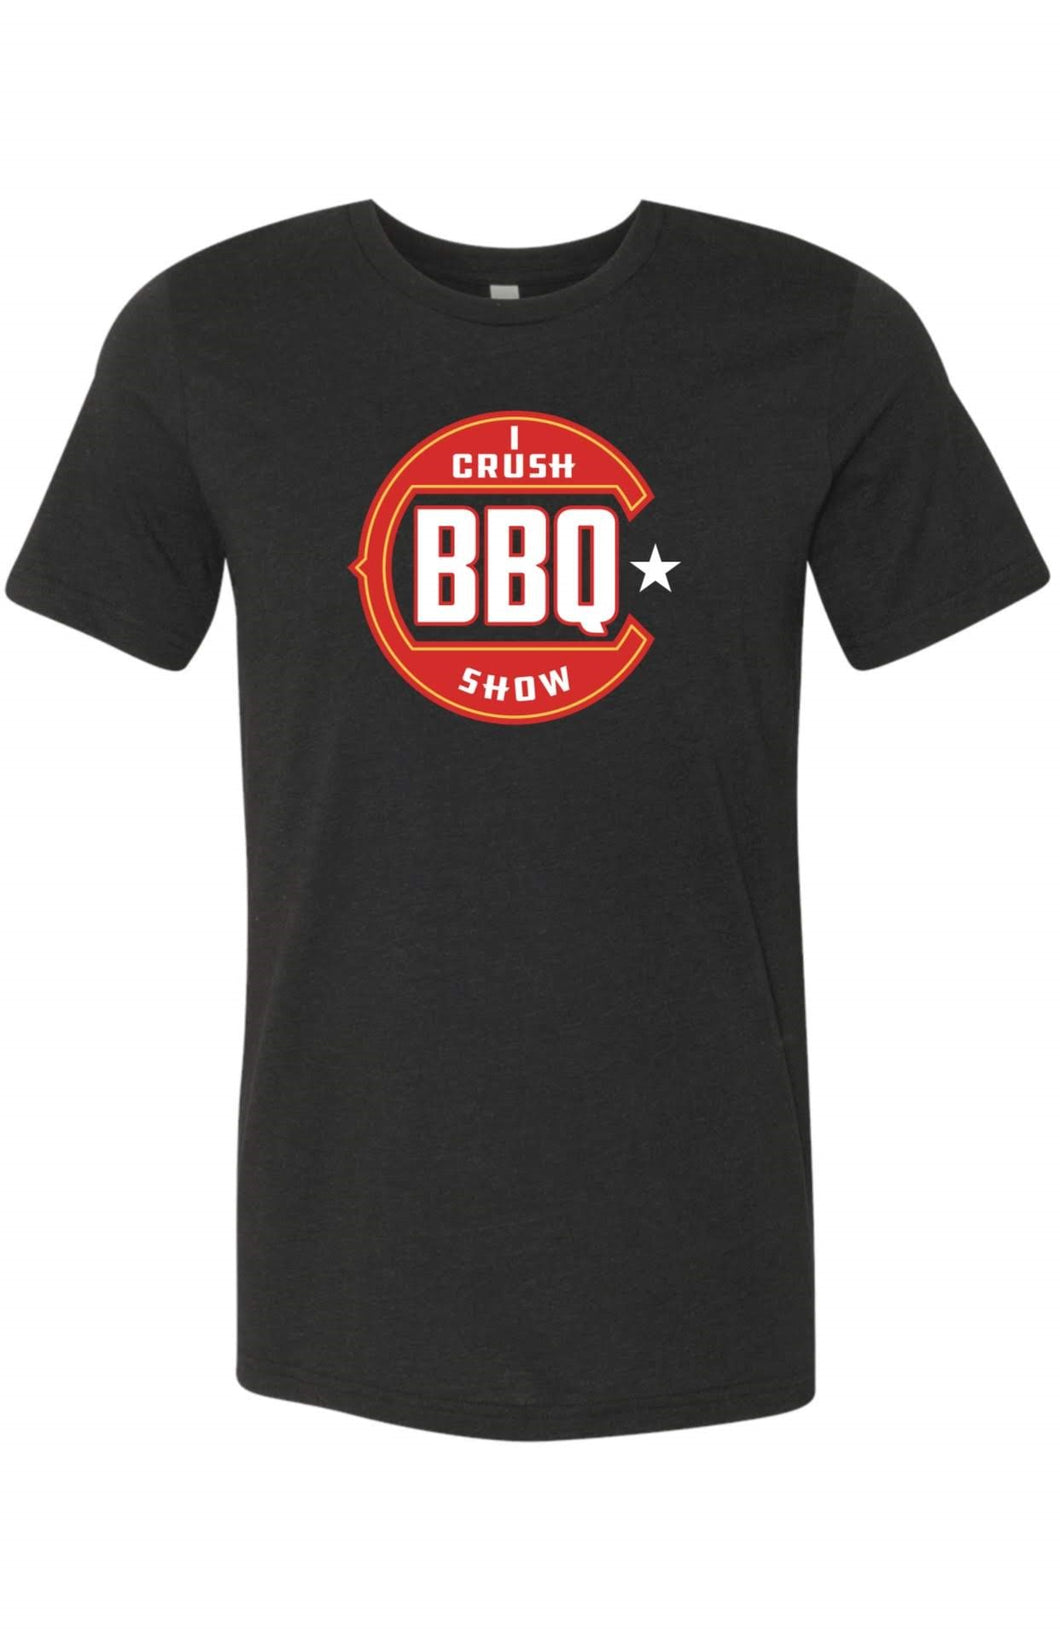 I Crush BBQ Show T-Shirt